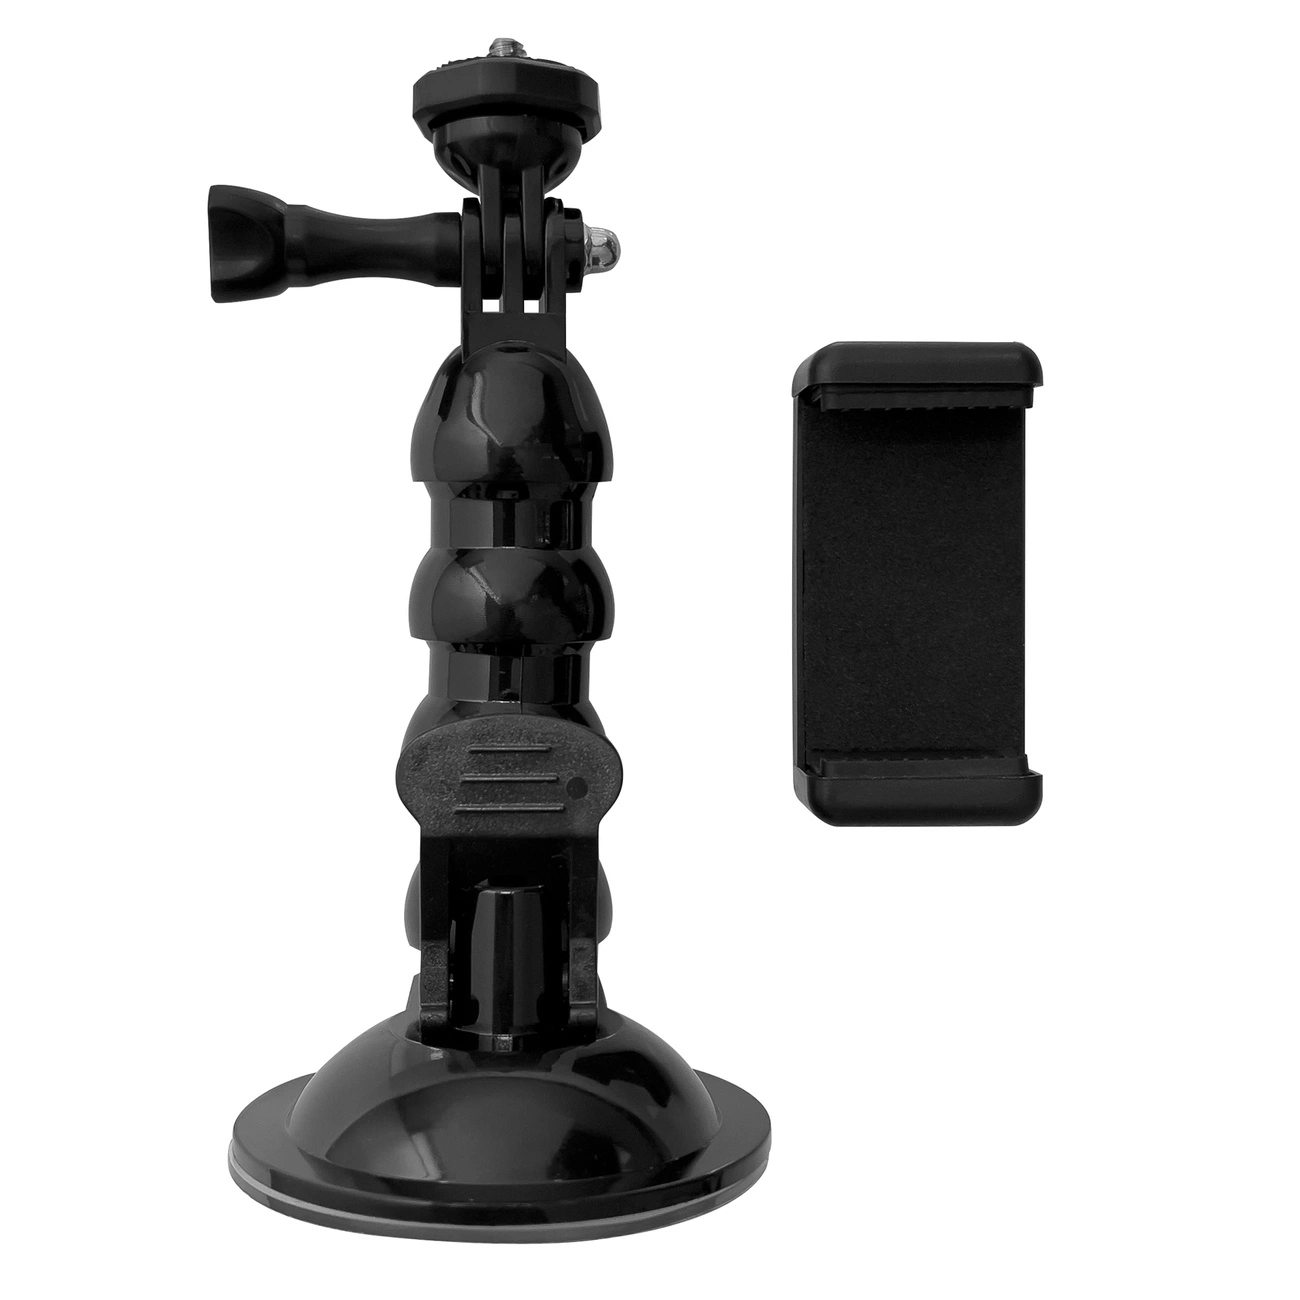 Hurtel Přísavný držák GoPro pro sportovní kamery GoPro, DJI, Insta360, SJCam, Eken + adaptér pro chytrý telefon (přísavka GoPro do auta)